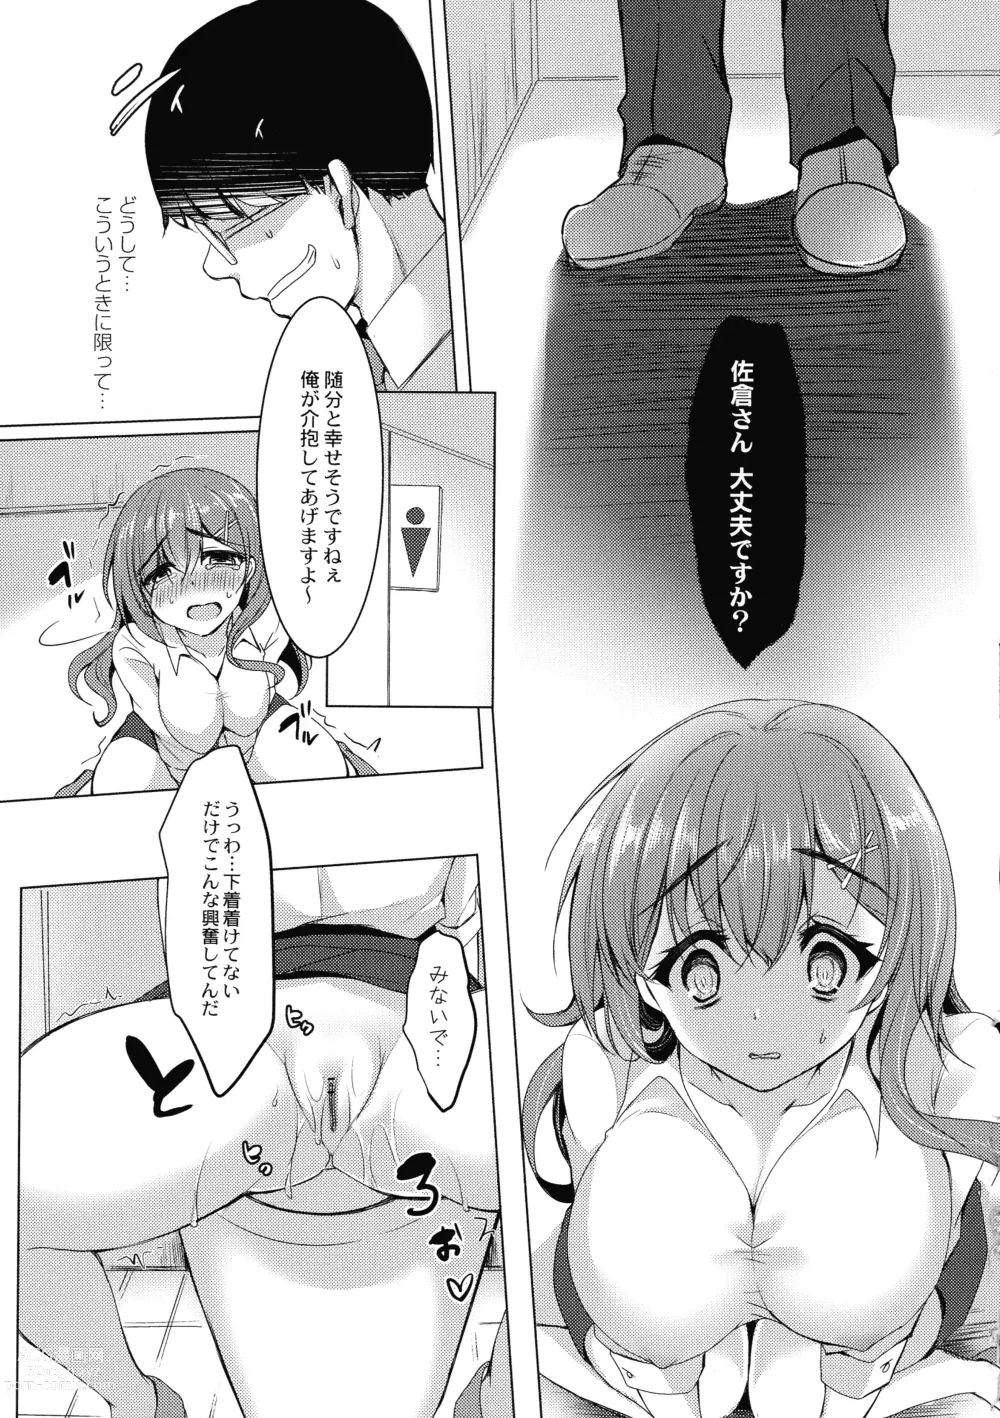 Page 181 of manga Mesuochi.